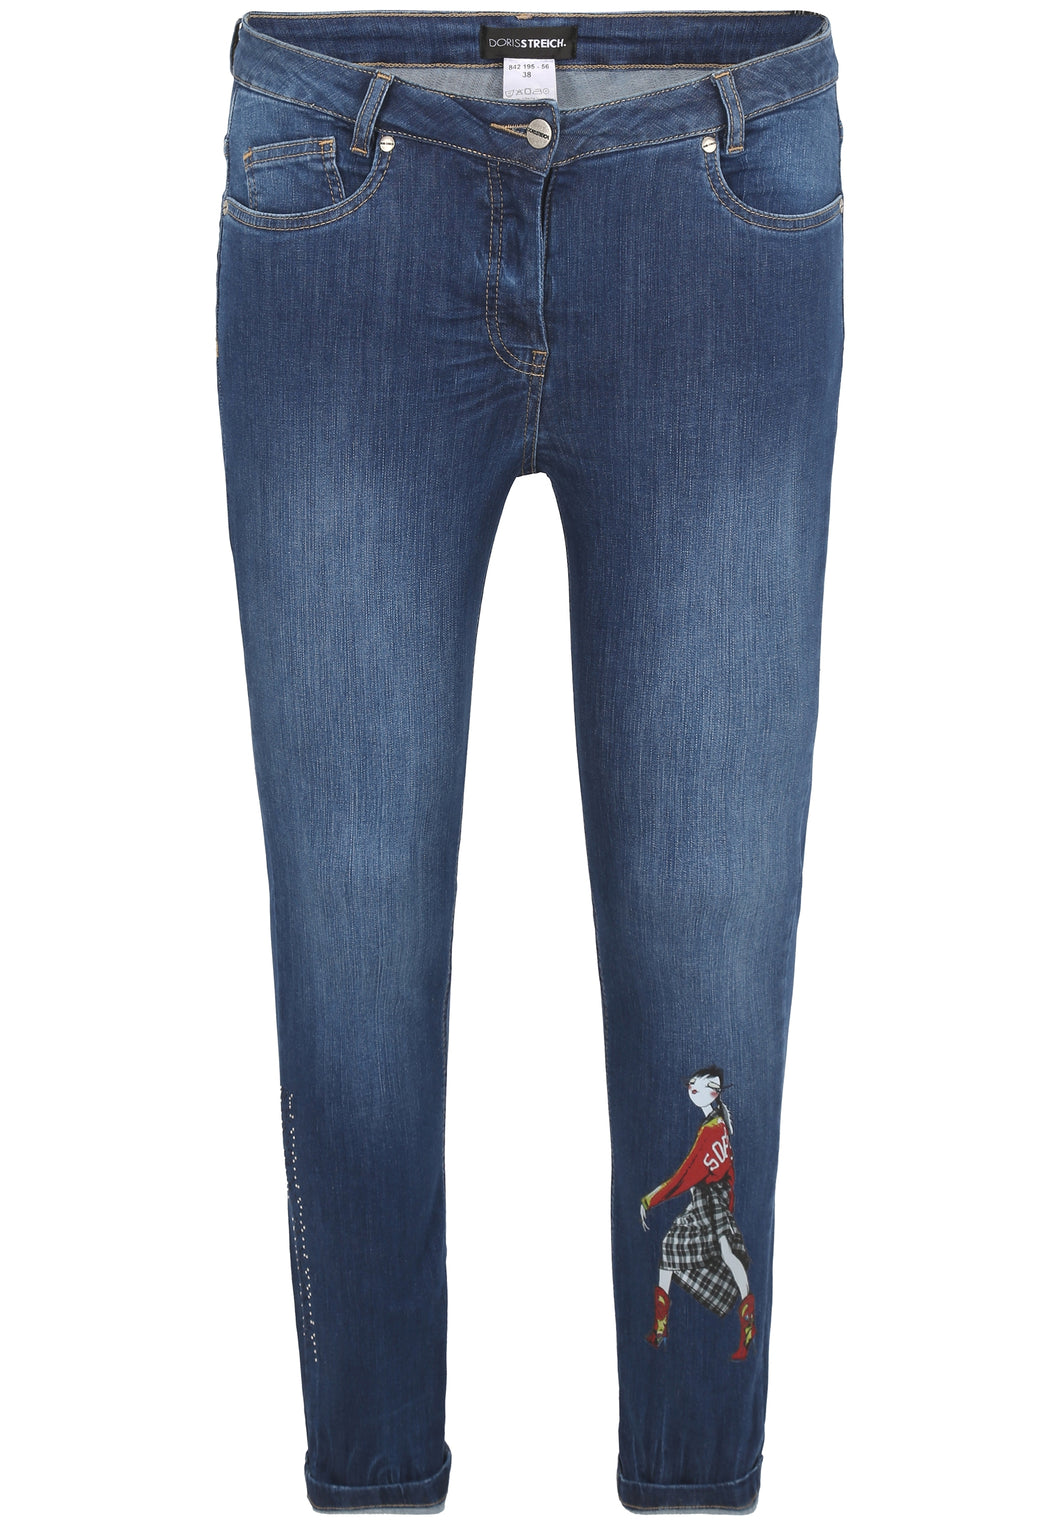 Doris Streich Jeans mit Print Gr. 46 - 54